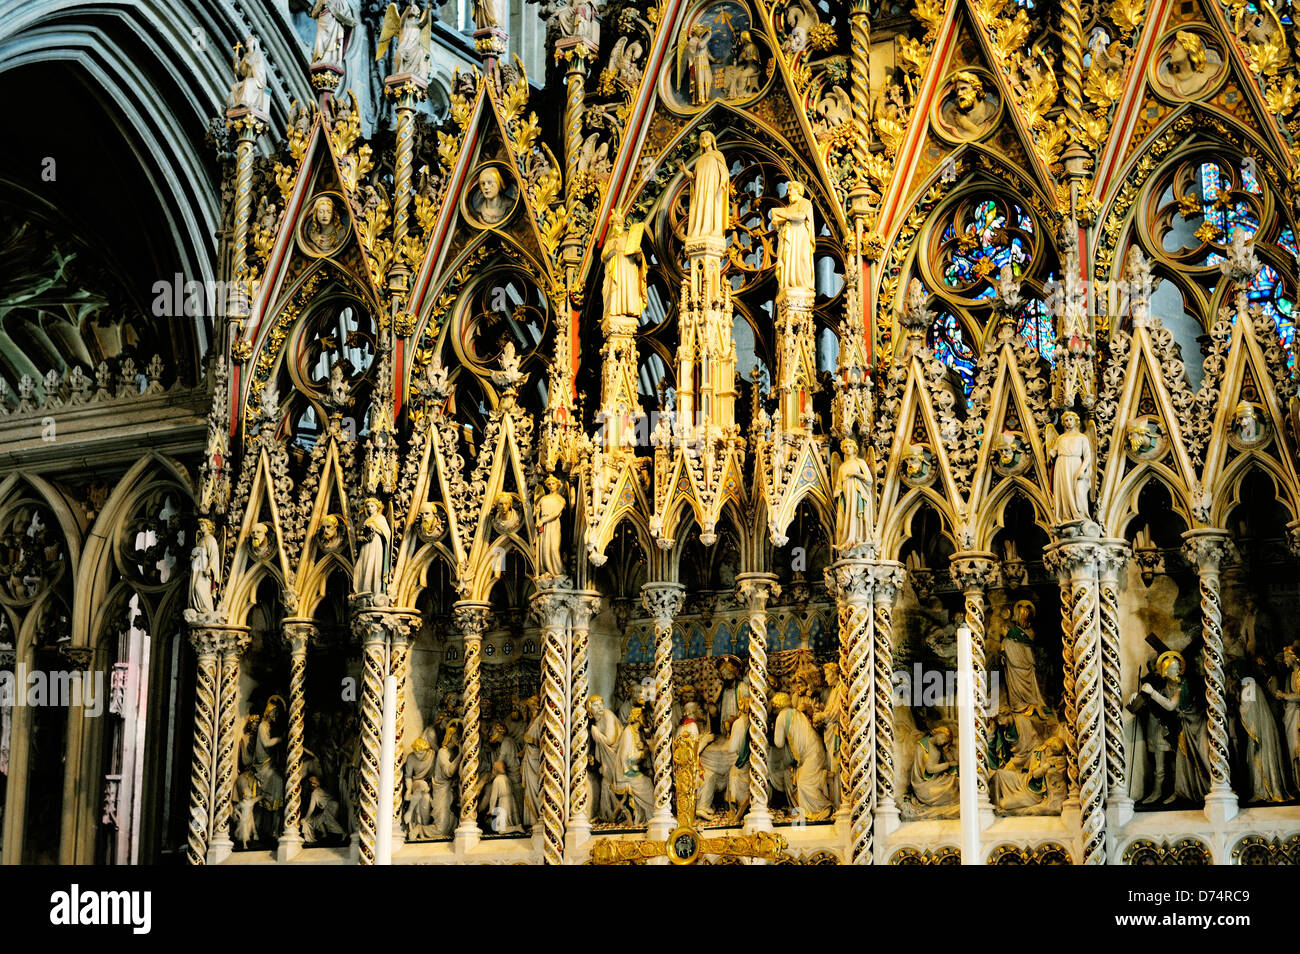 Kathedrale von Ely, Cambridgeshire, England. Die reich verzierten Chor Bildschirm von Westen gesehen Stockfoto